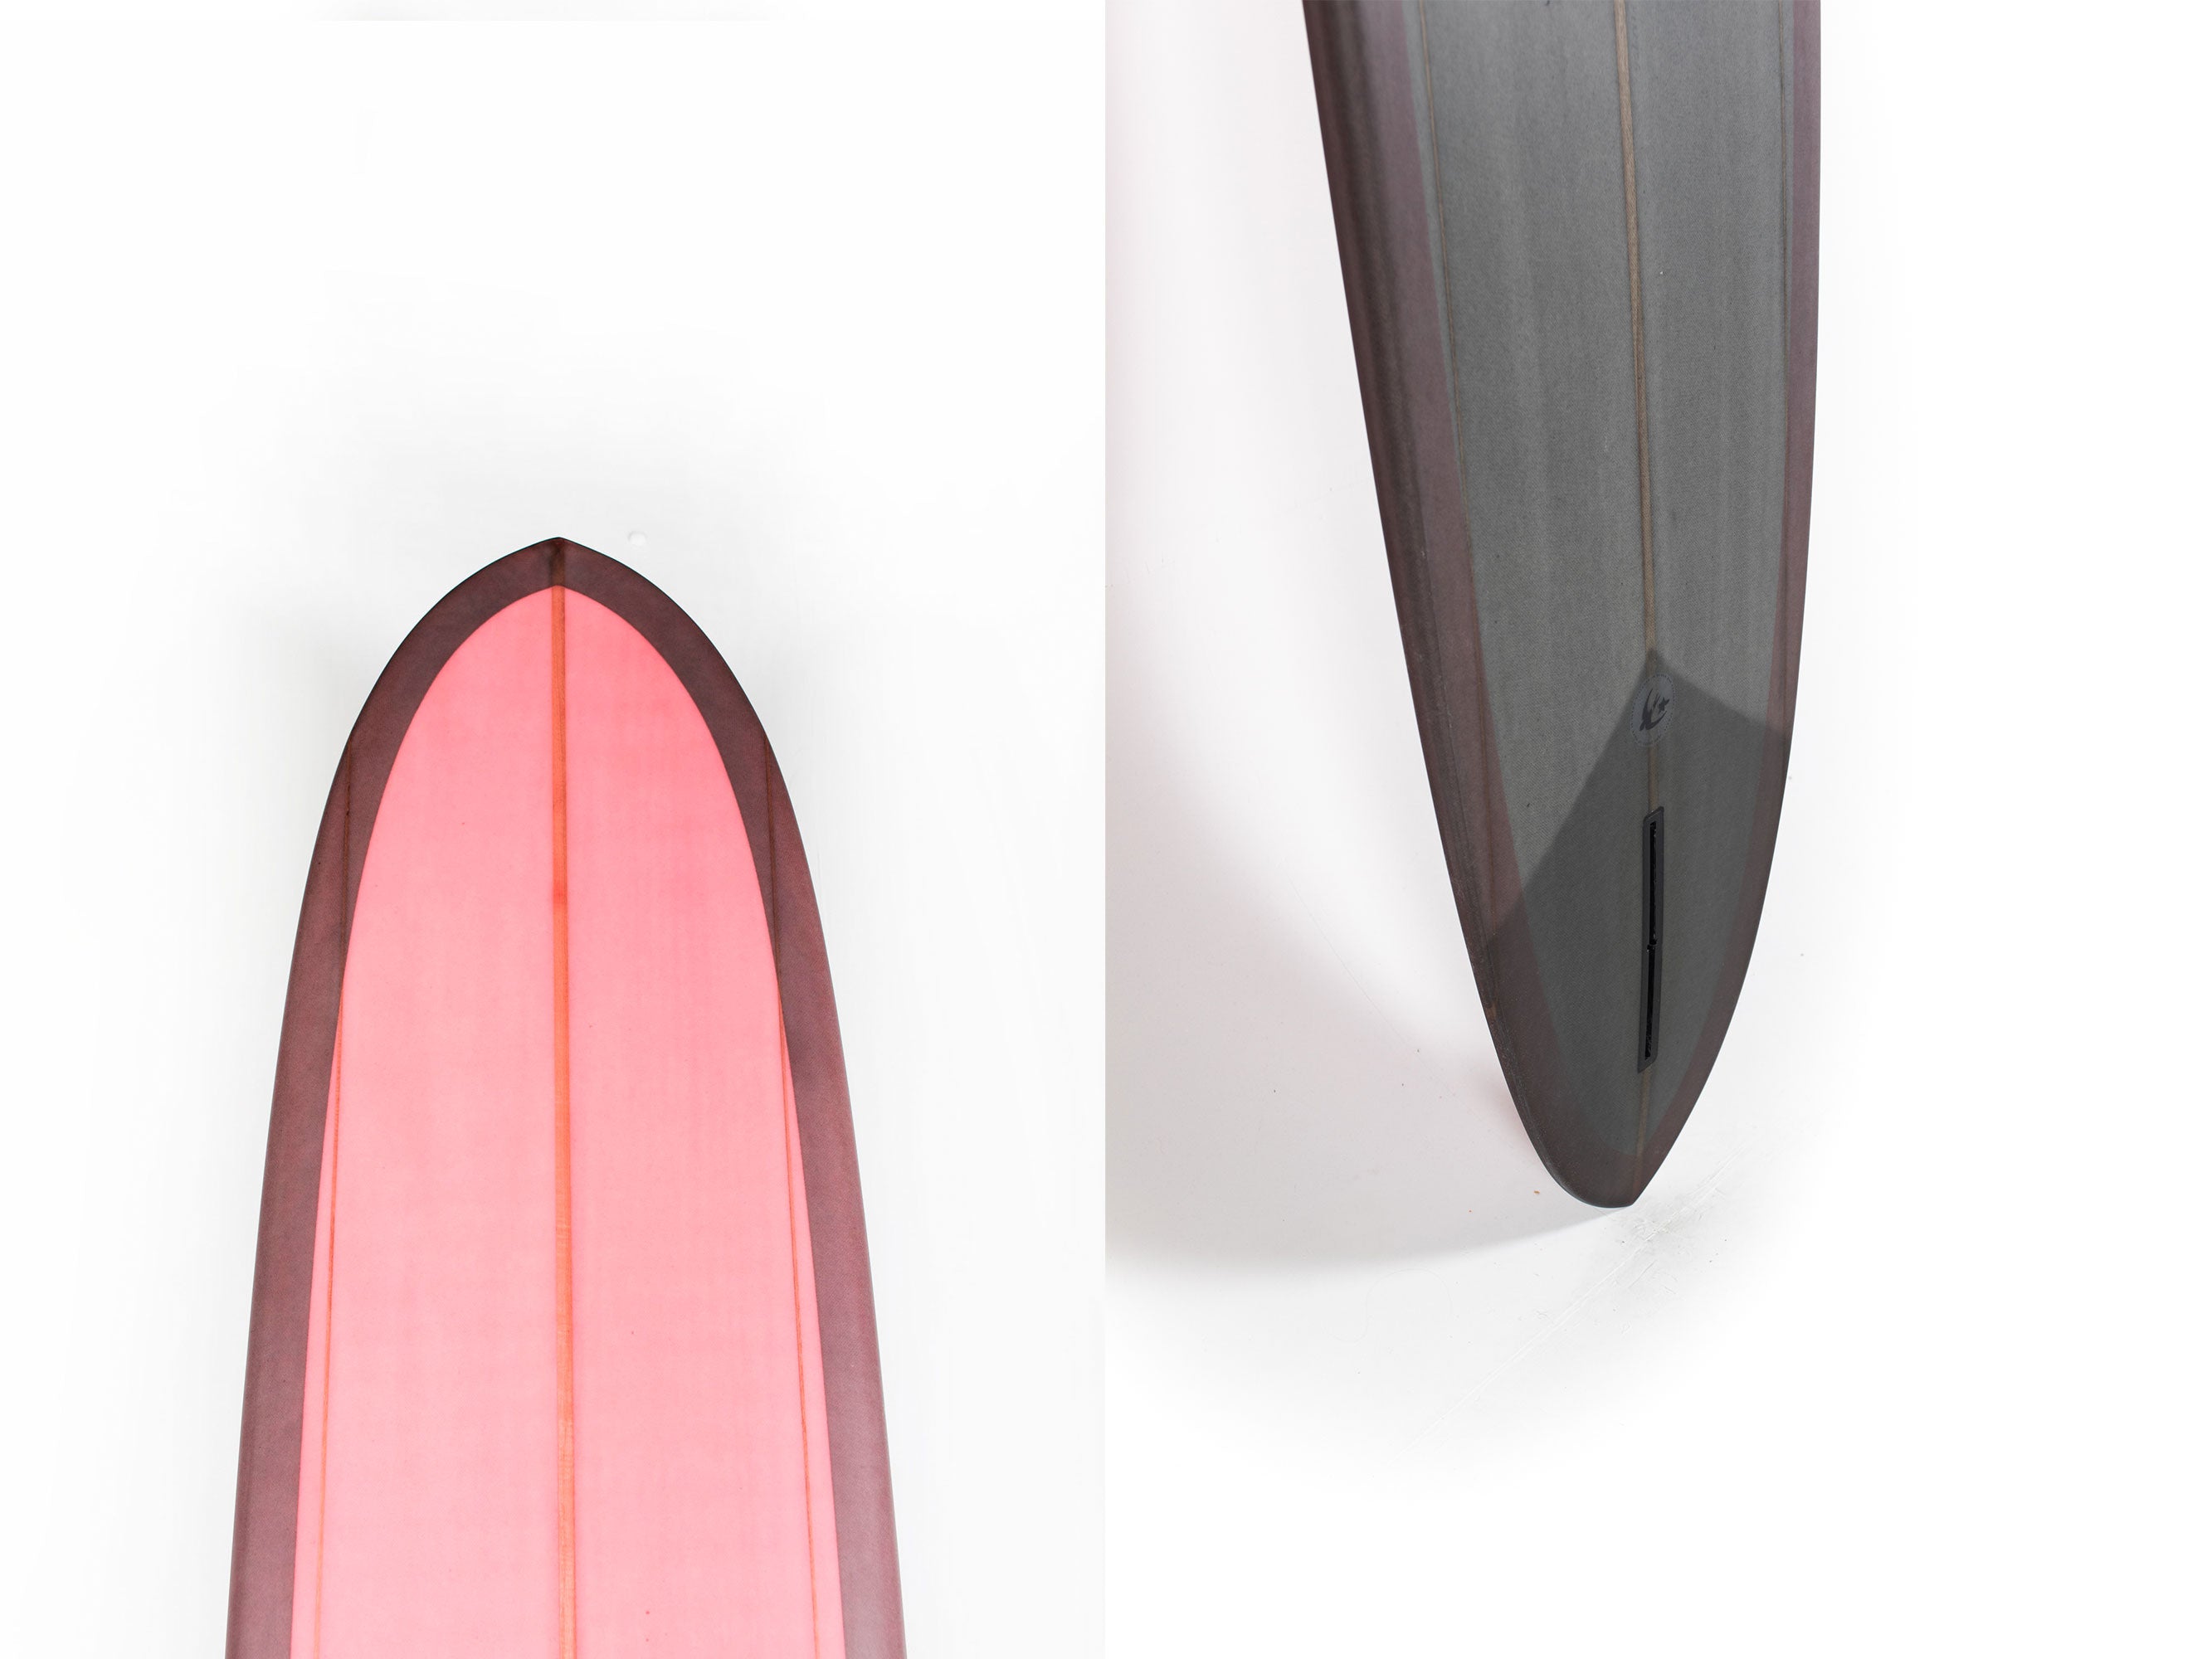 McTavish Surfboard - PINNACLE by Bob McTavish - 9'6" x 23 x 3 - BM00781